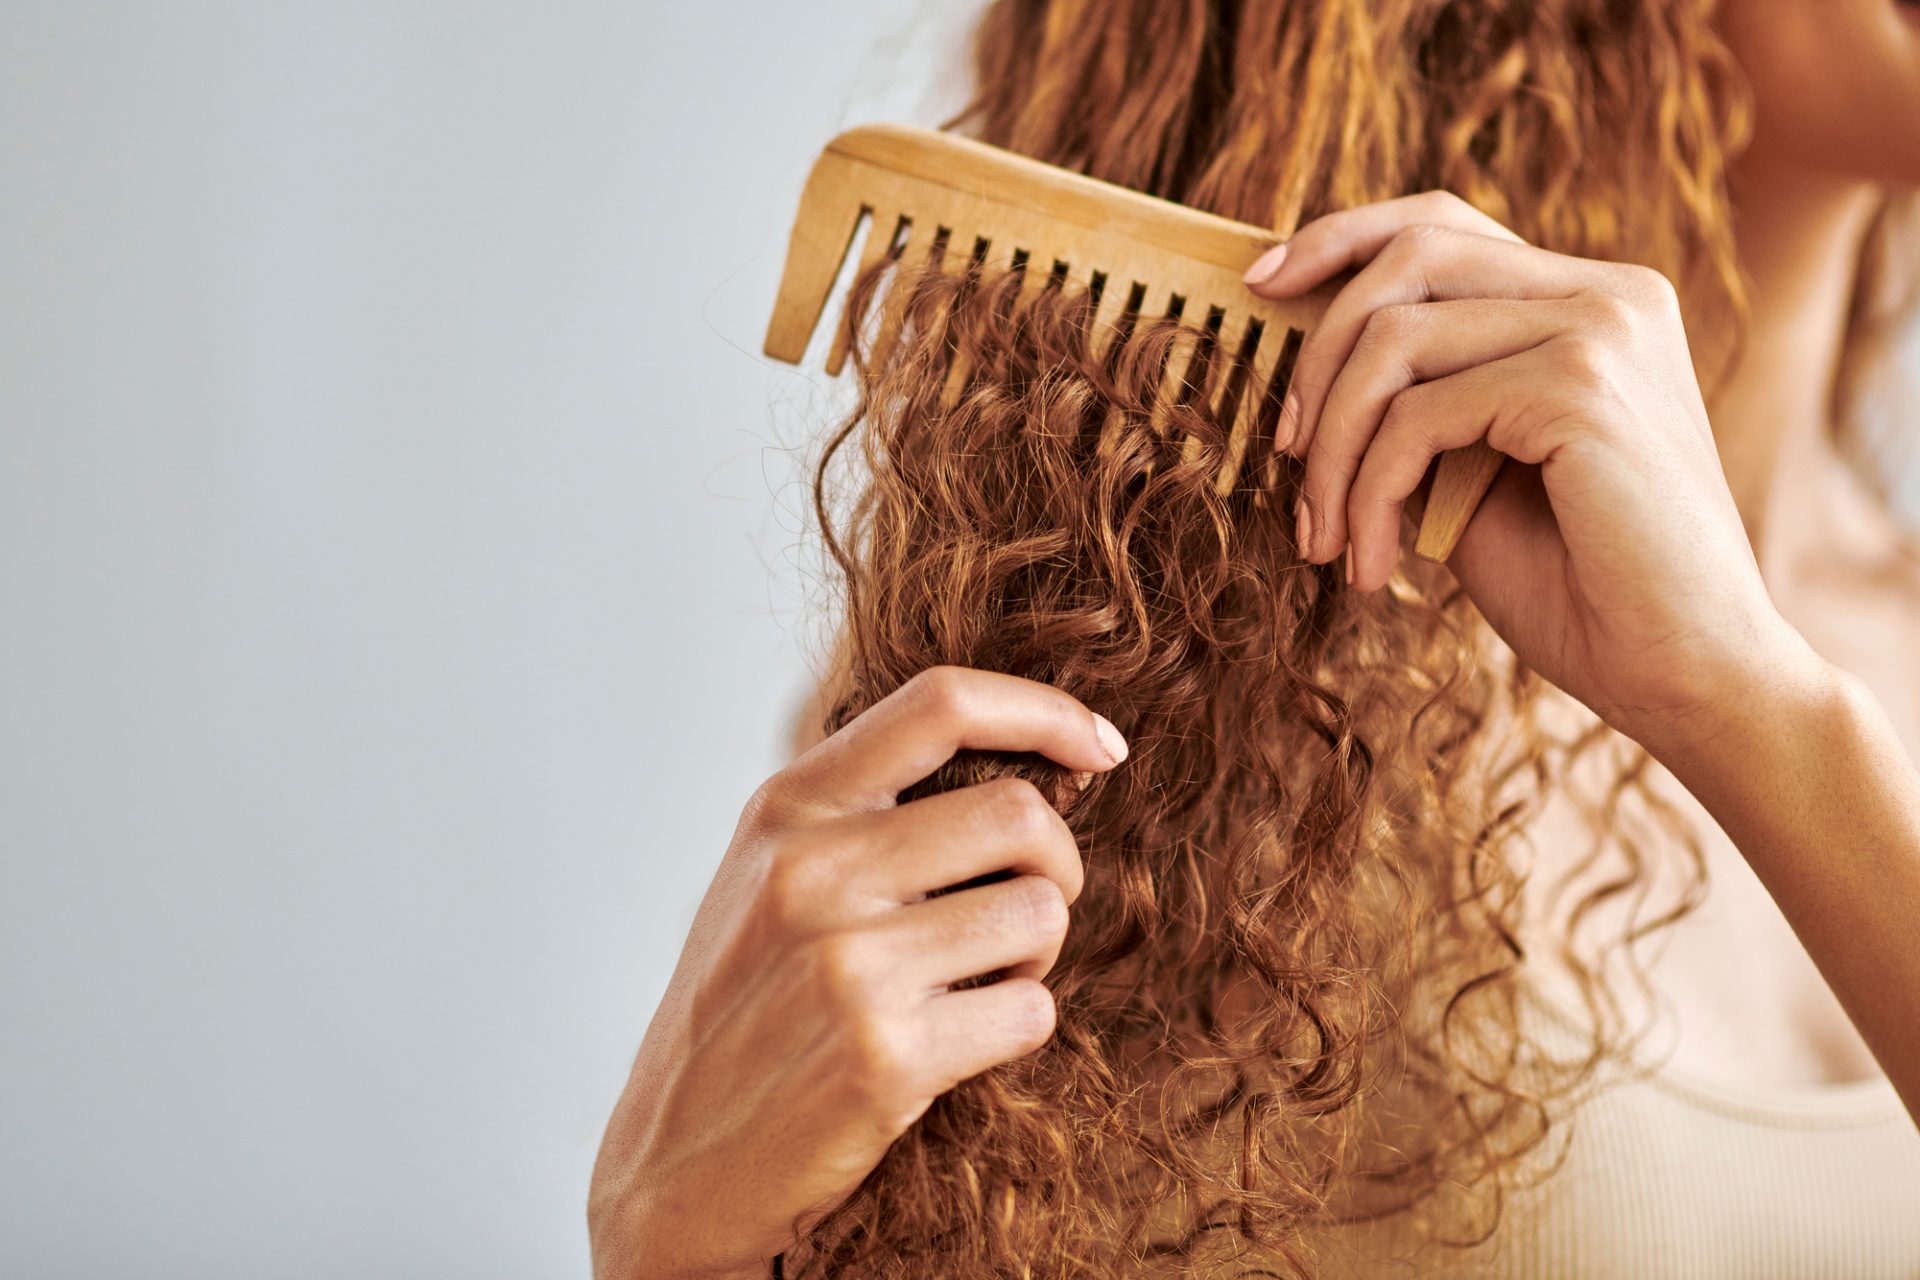 <p>Se hai il cuoio capelluto secco o i capelli ricci, probabilmente sai già che lavare i capelli tutti i giorni può causare l'effetto crespo o esacerbare la secchezza. In questi casi, gli esperti consigliano di limitare lo shampoo a una o due volte a settimana.</p>